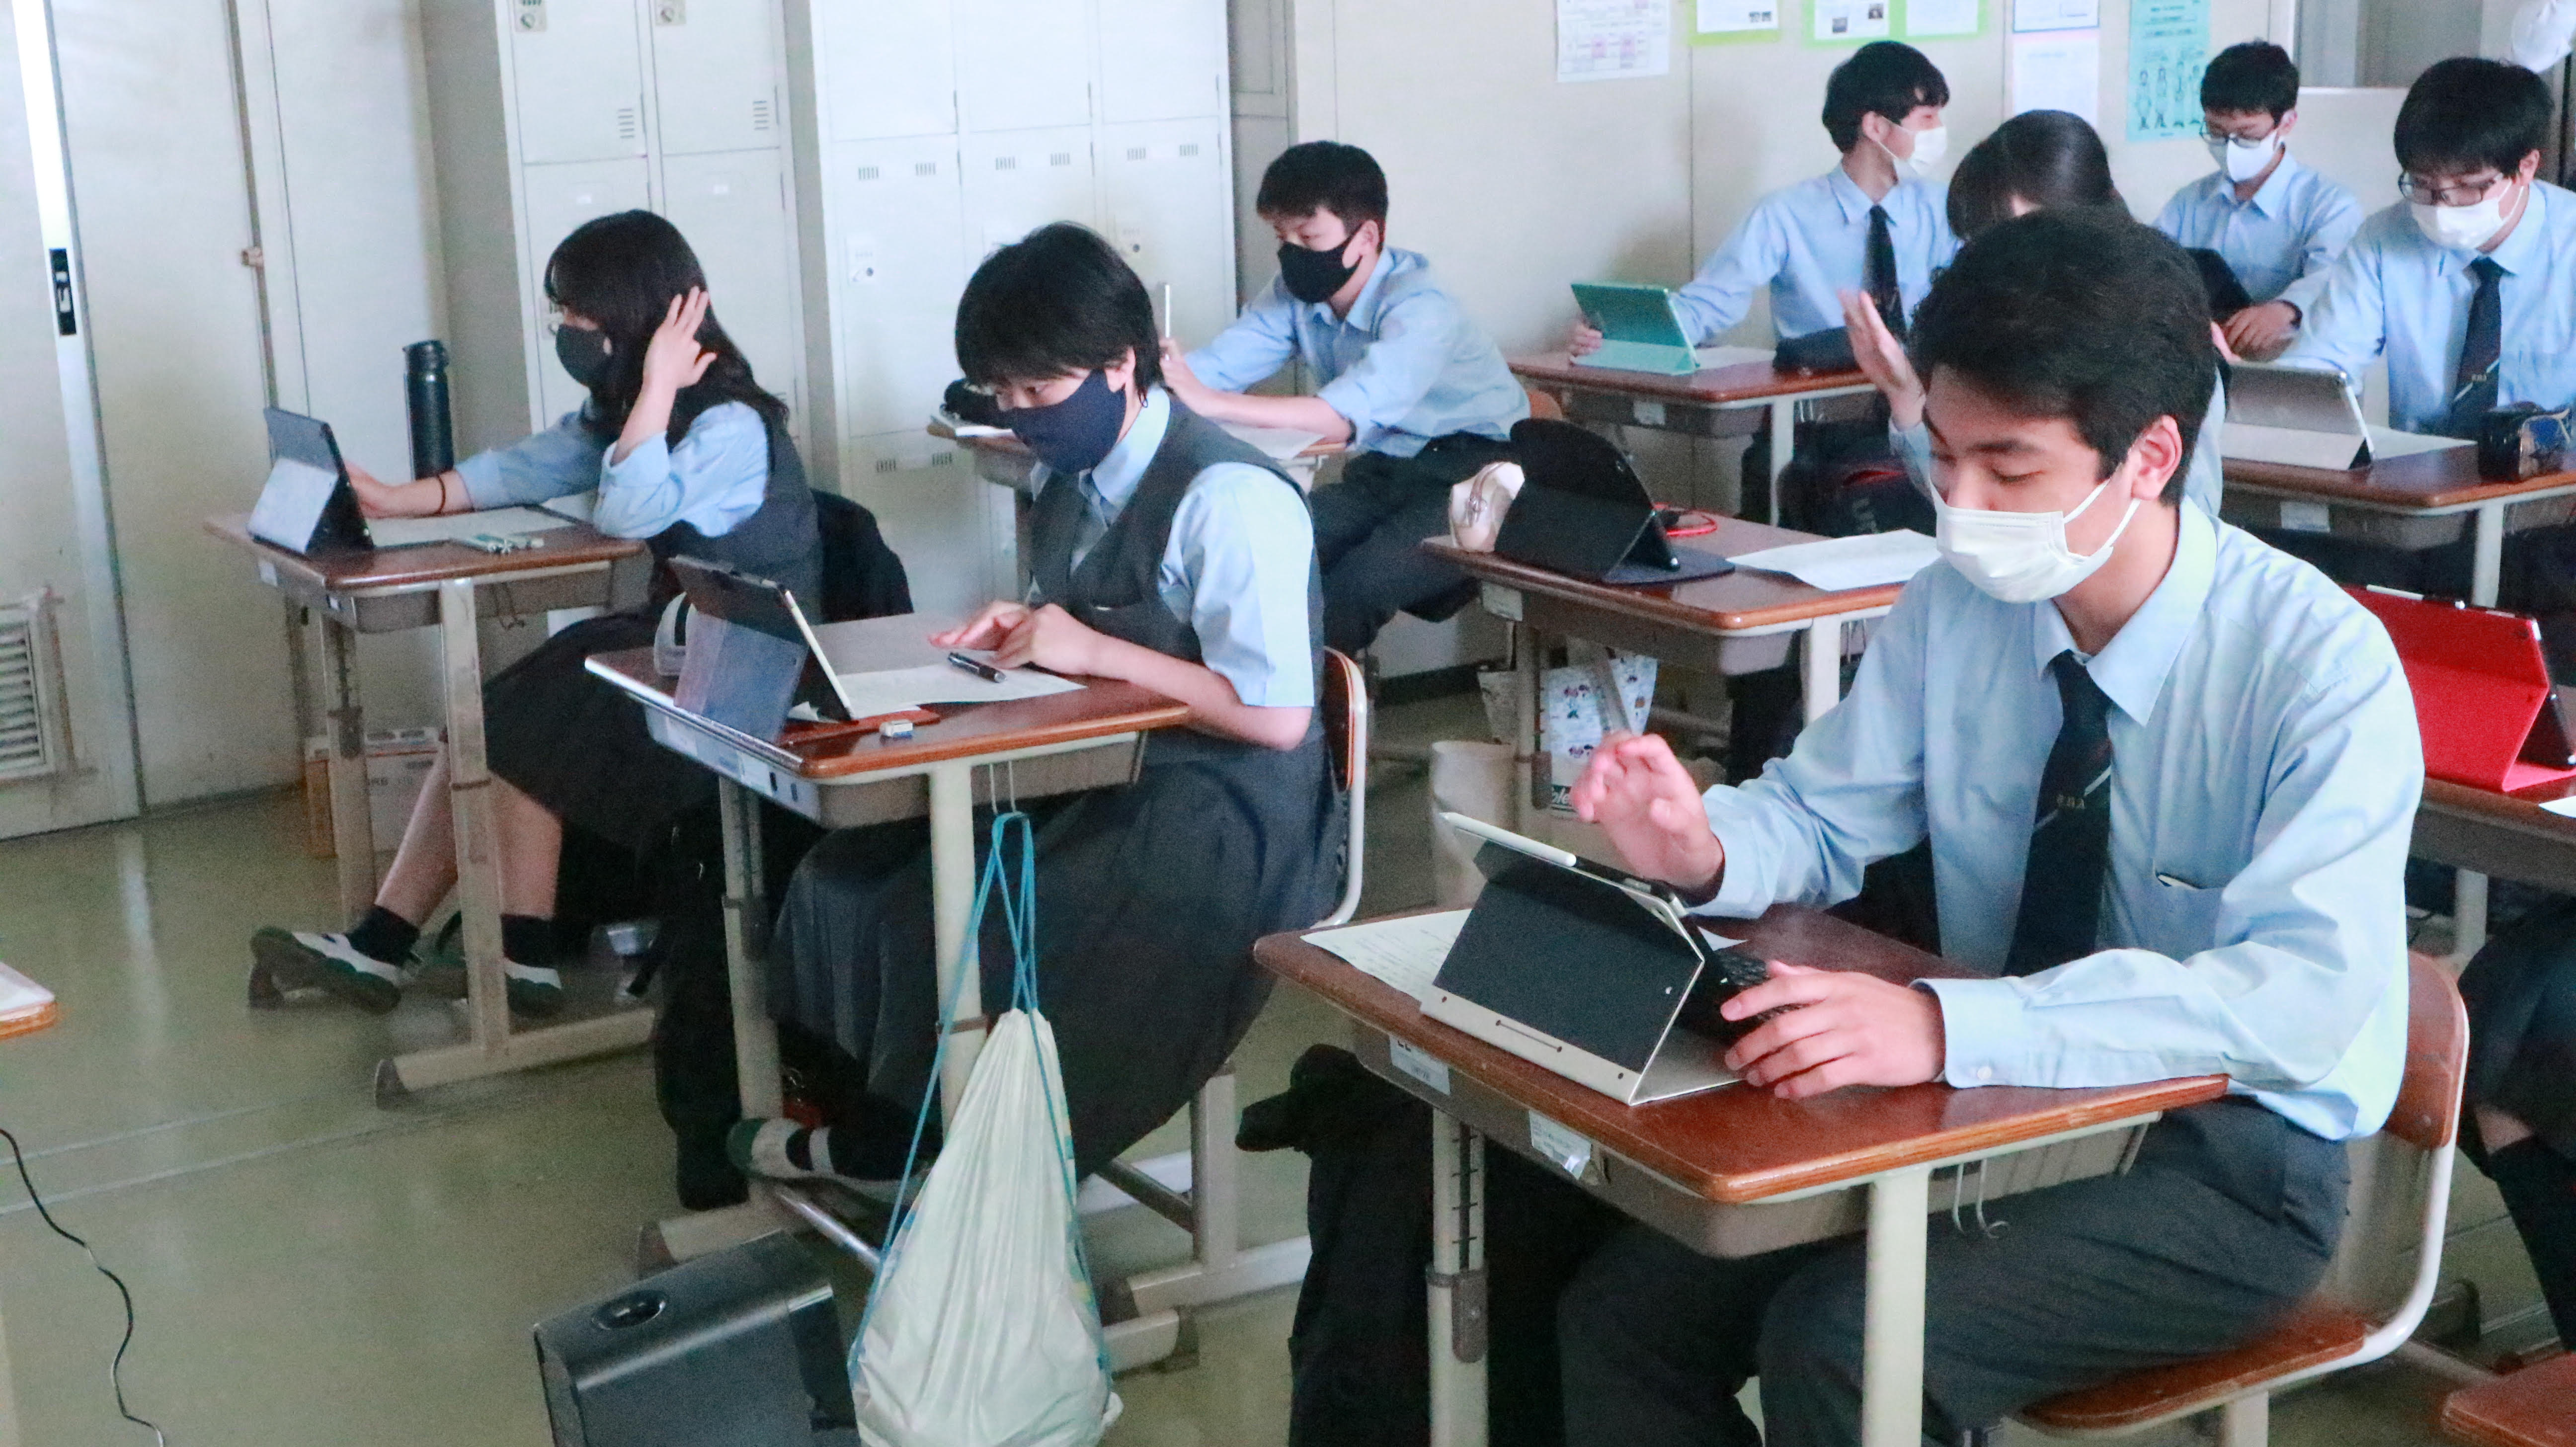 新北巿中平國中與東京農大第三高等學校高一學生進行別開生面的全英語線上交流，圖為日本學生視訊實況.